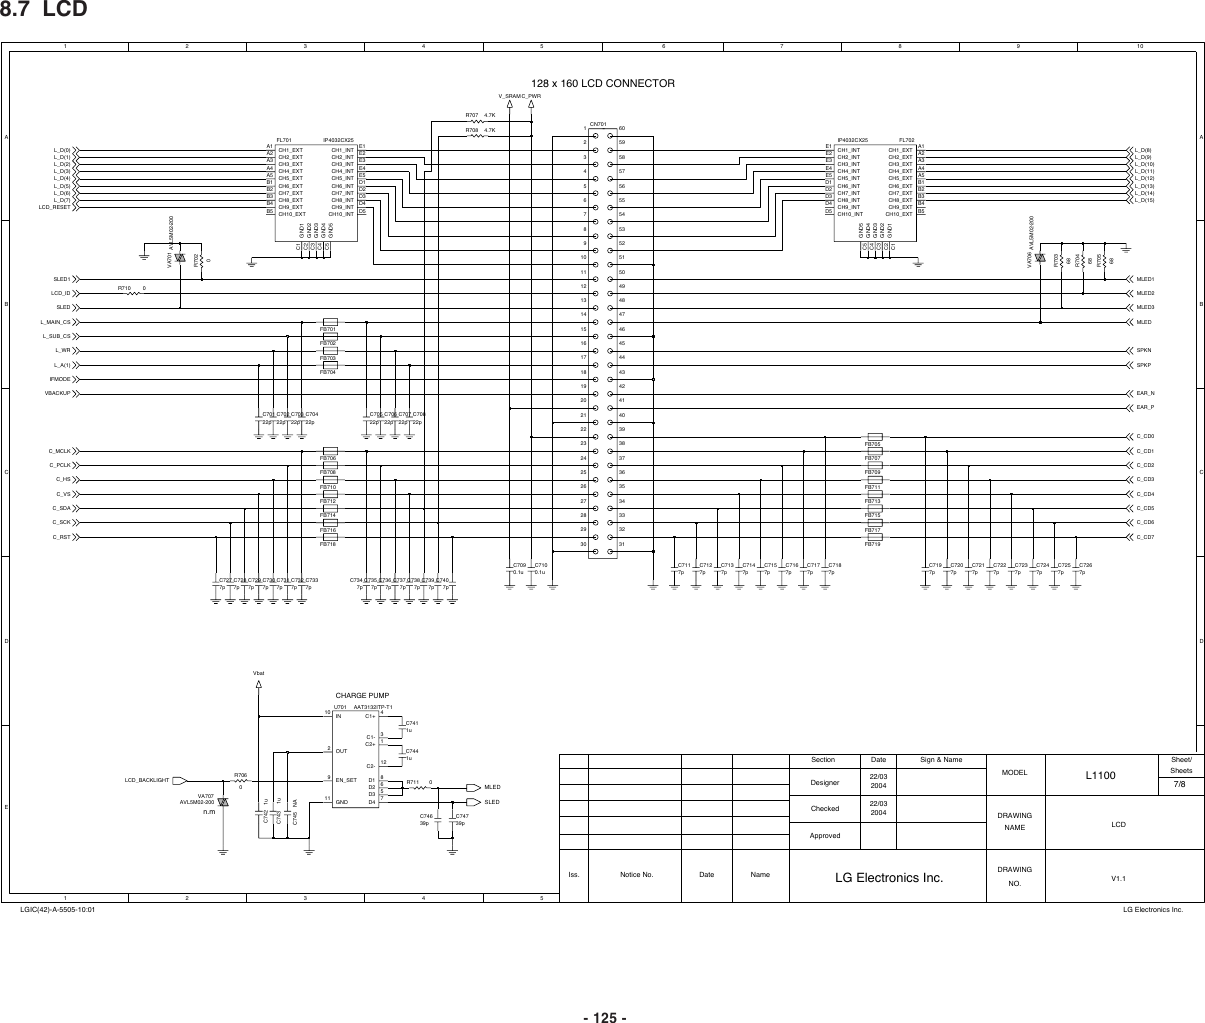 Page 7 of 11 - LG L1100 - Schematics. Www.s-manuals.com. Schematics